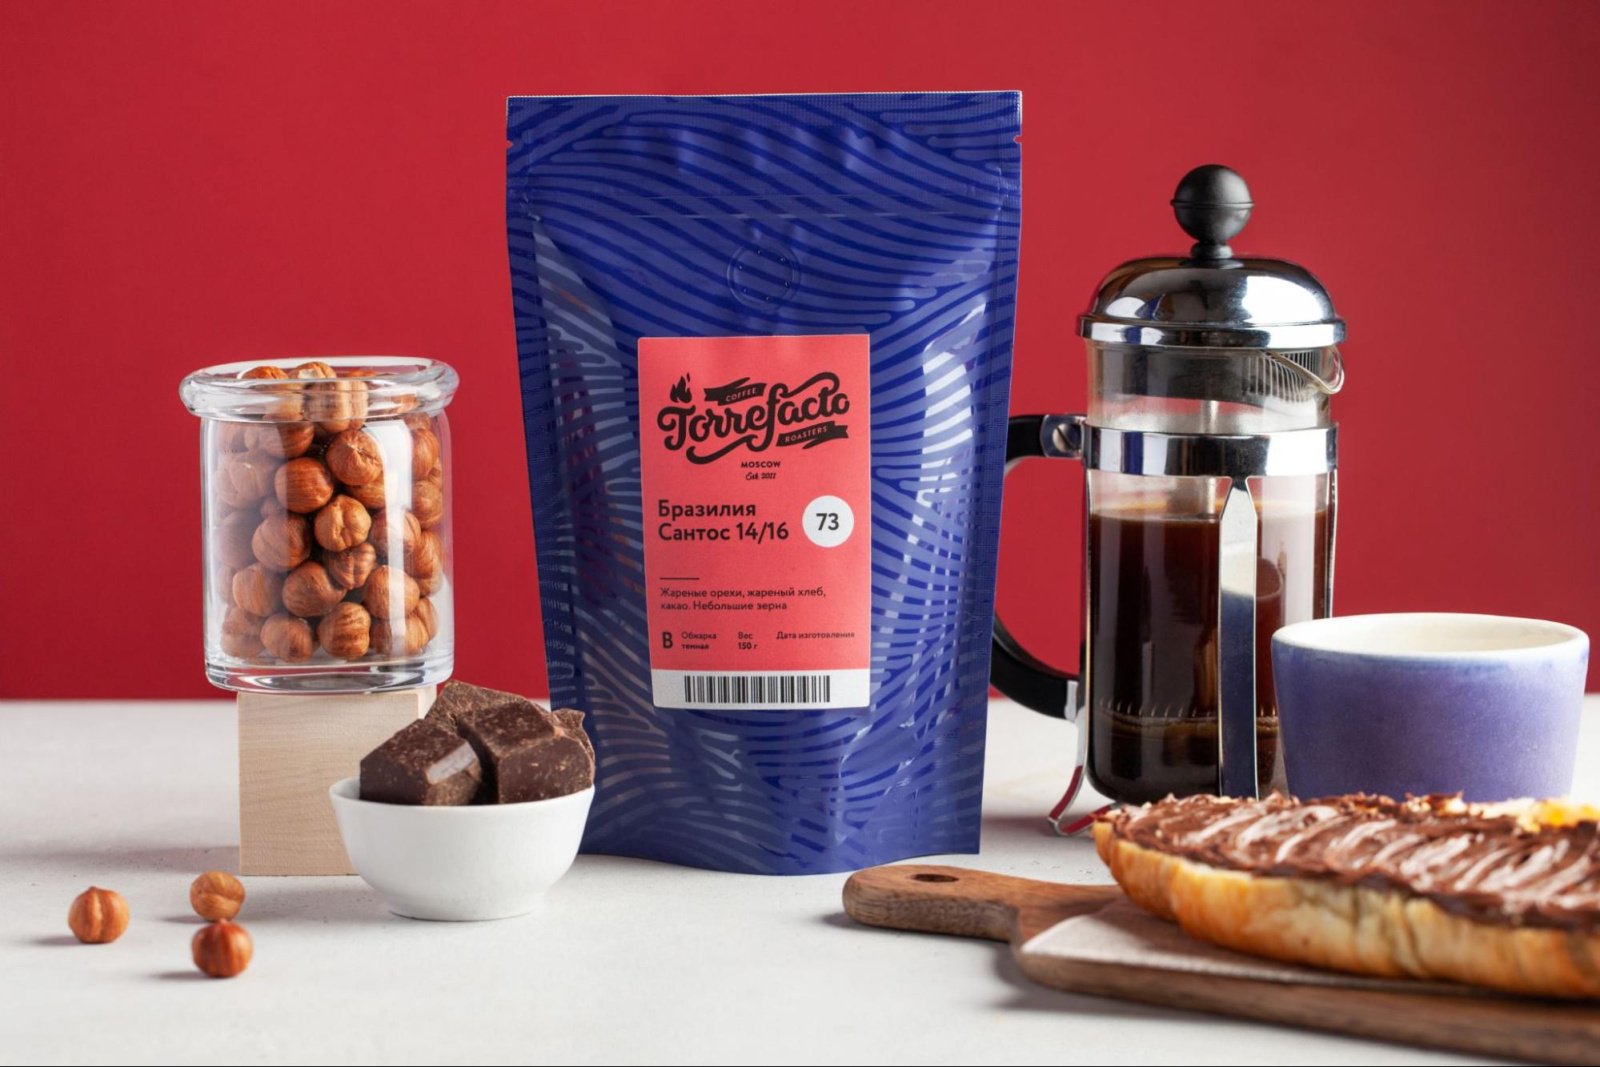 Кофе оптом и другие продукты: что Torrefacto может предложить кофейням?